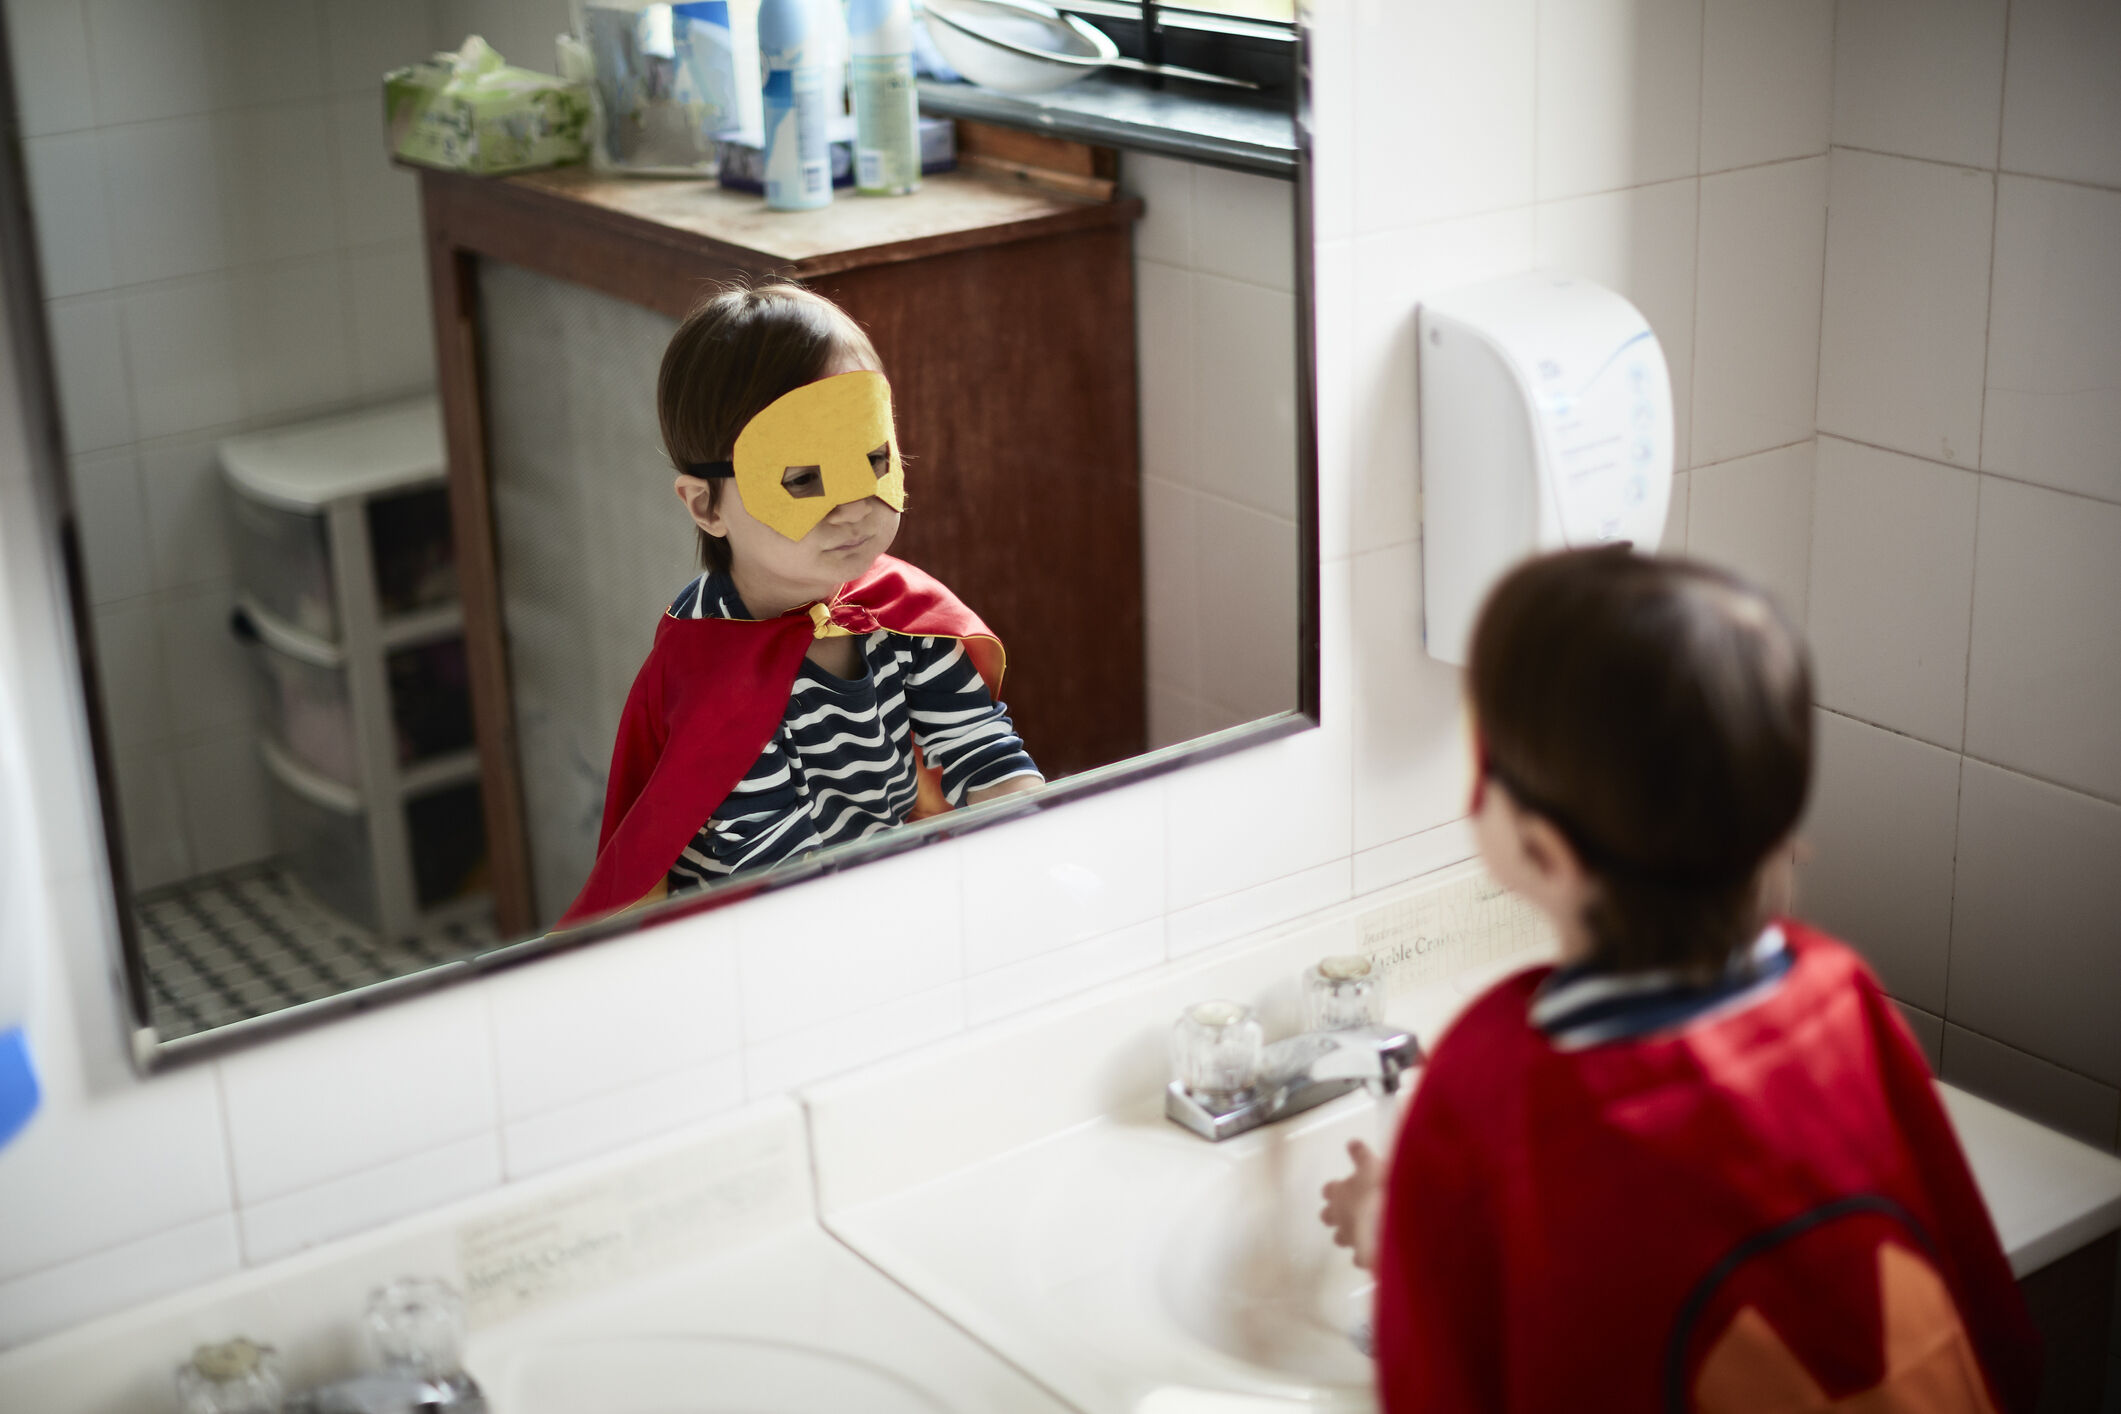 Menino usando máscara se olhando no espelho